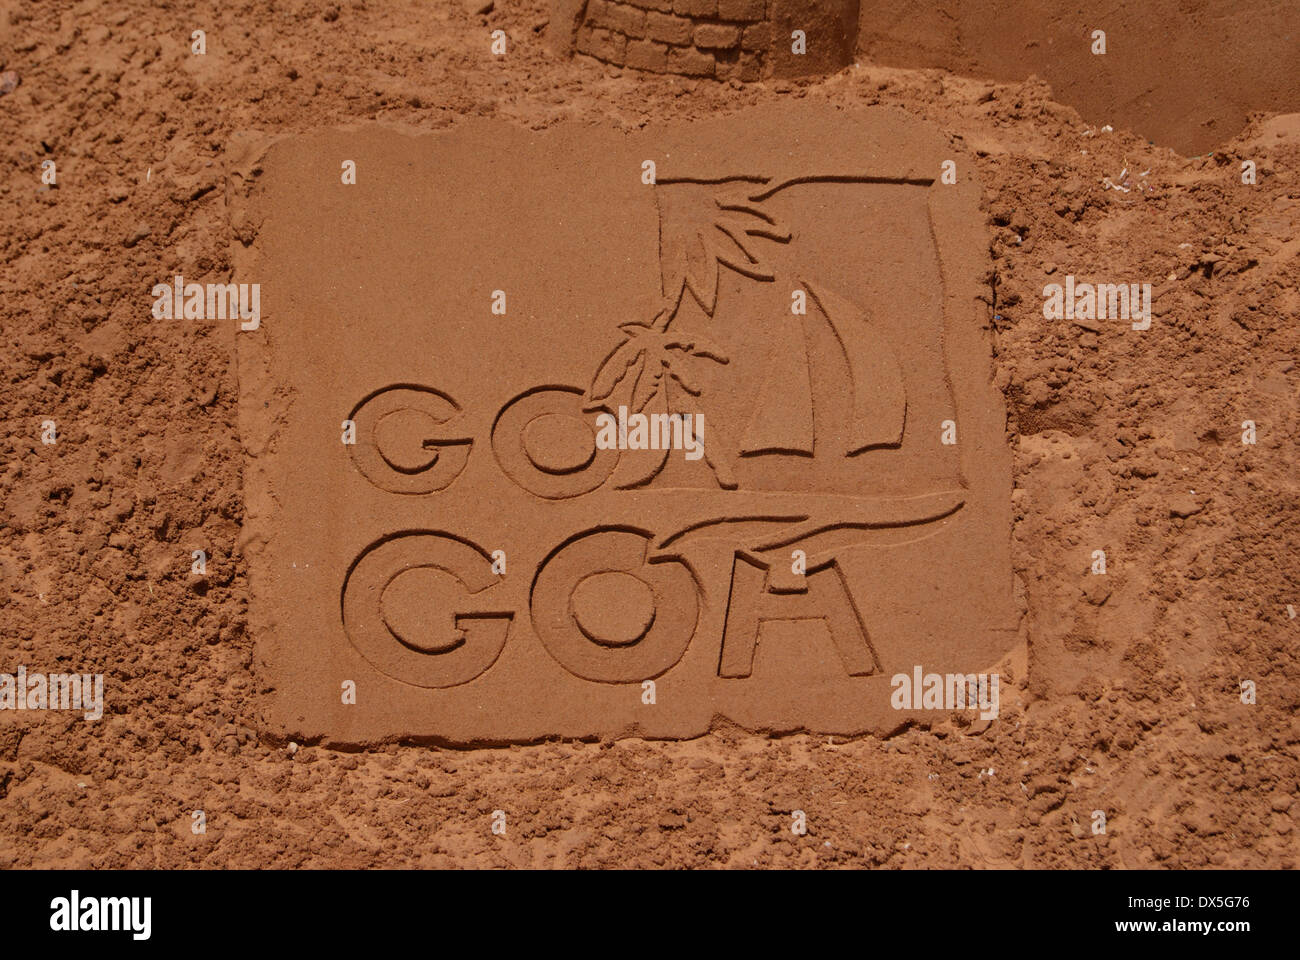 Go Goa Sand Art in Goa Beach India Stock Photo